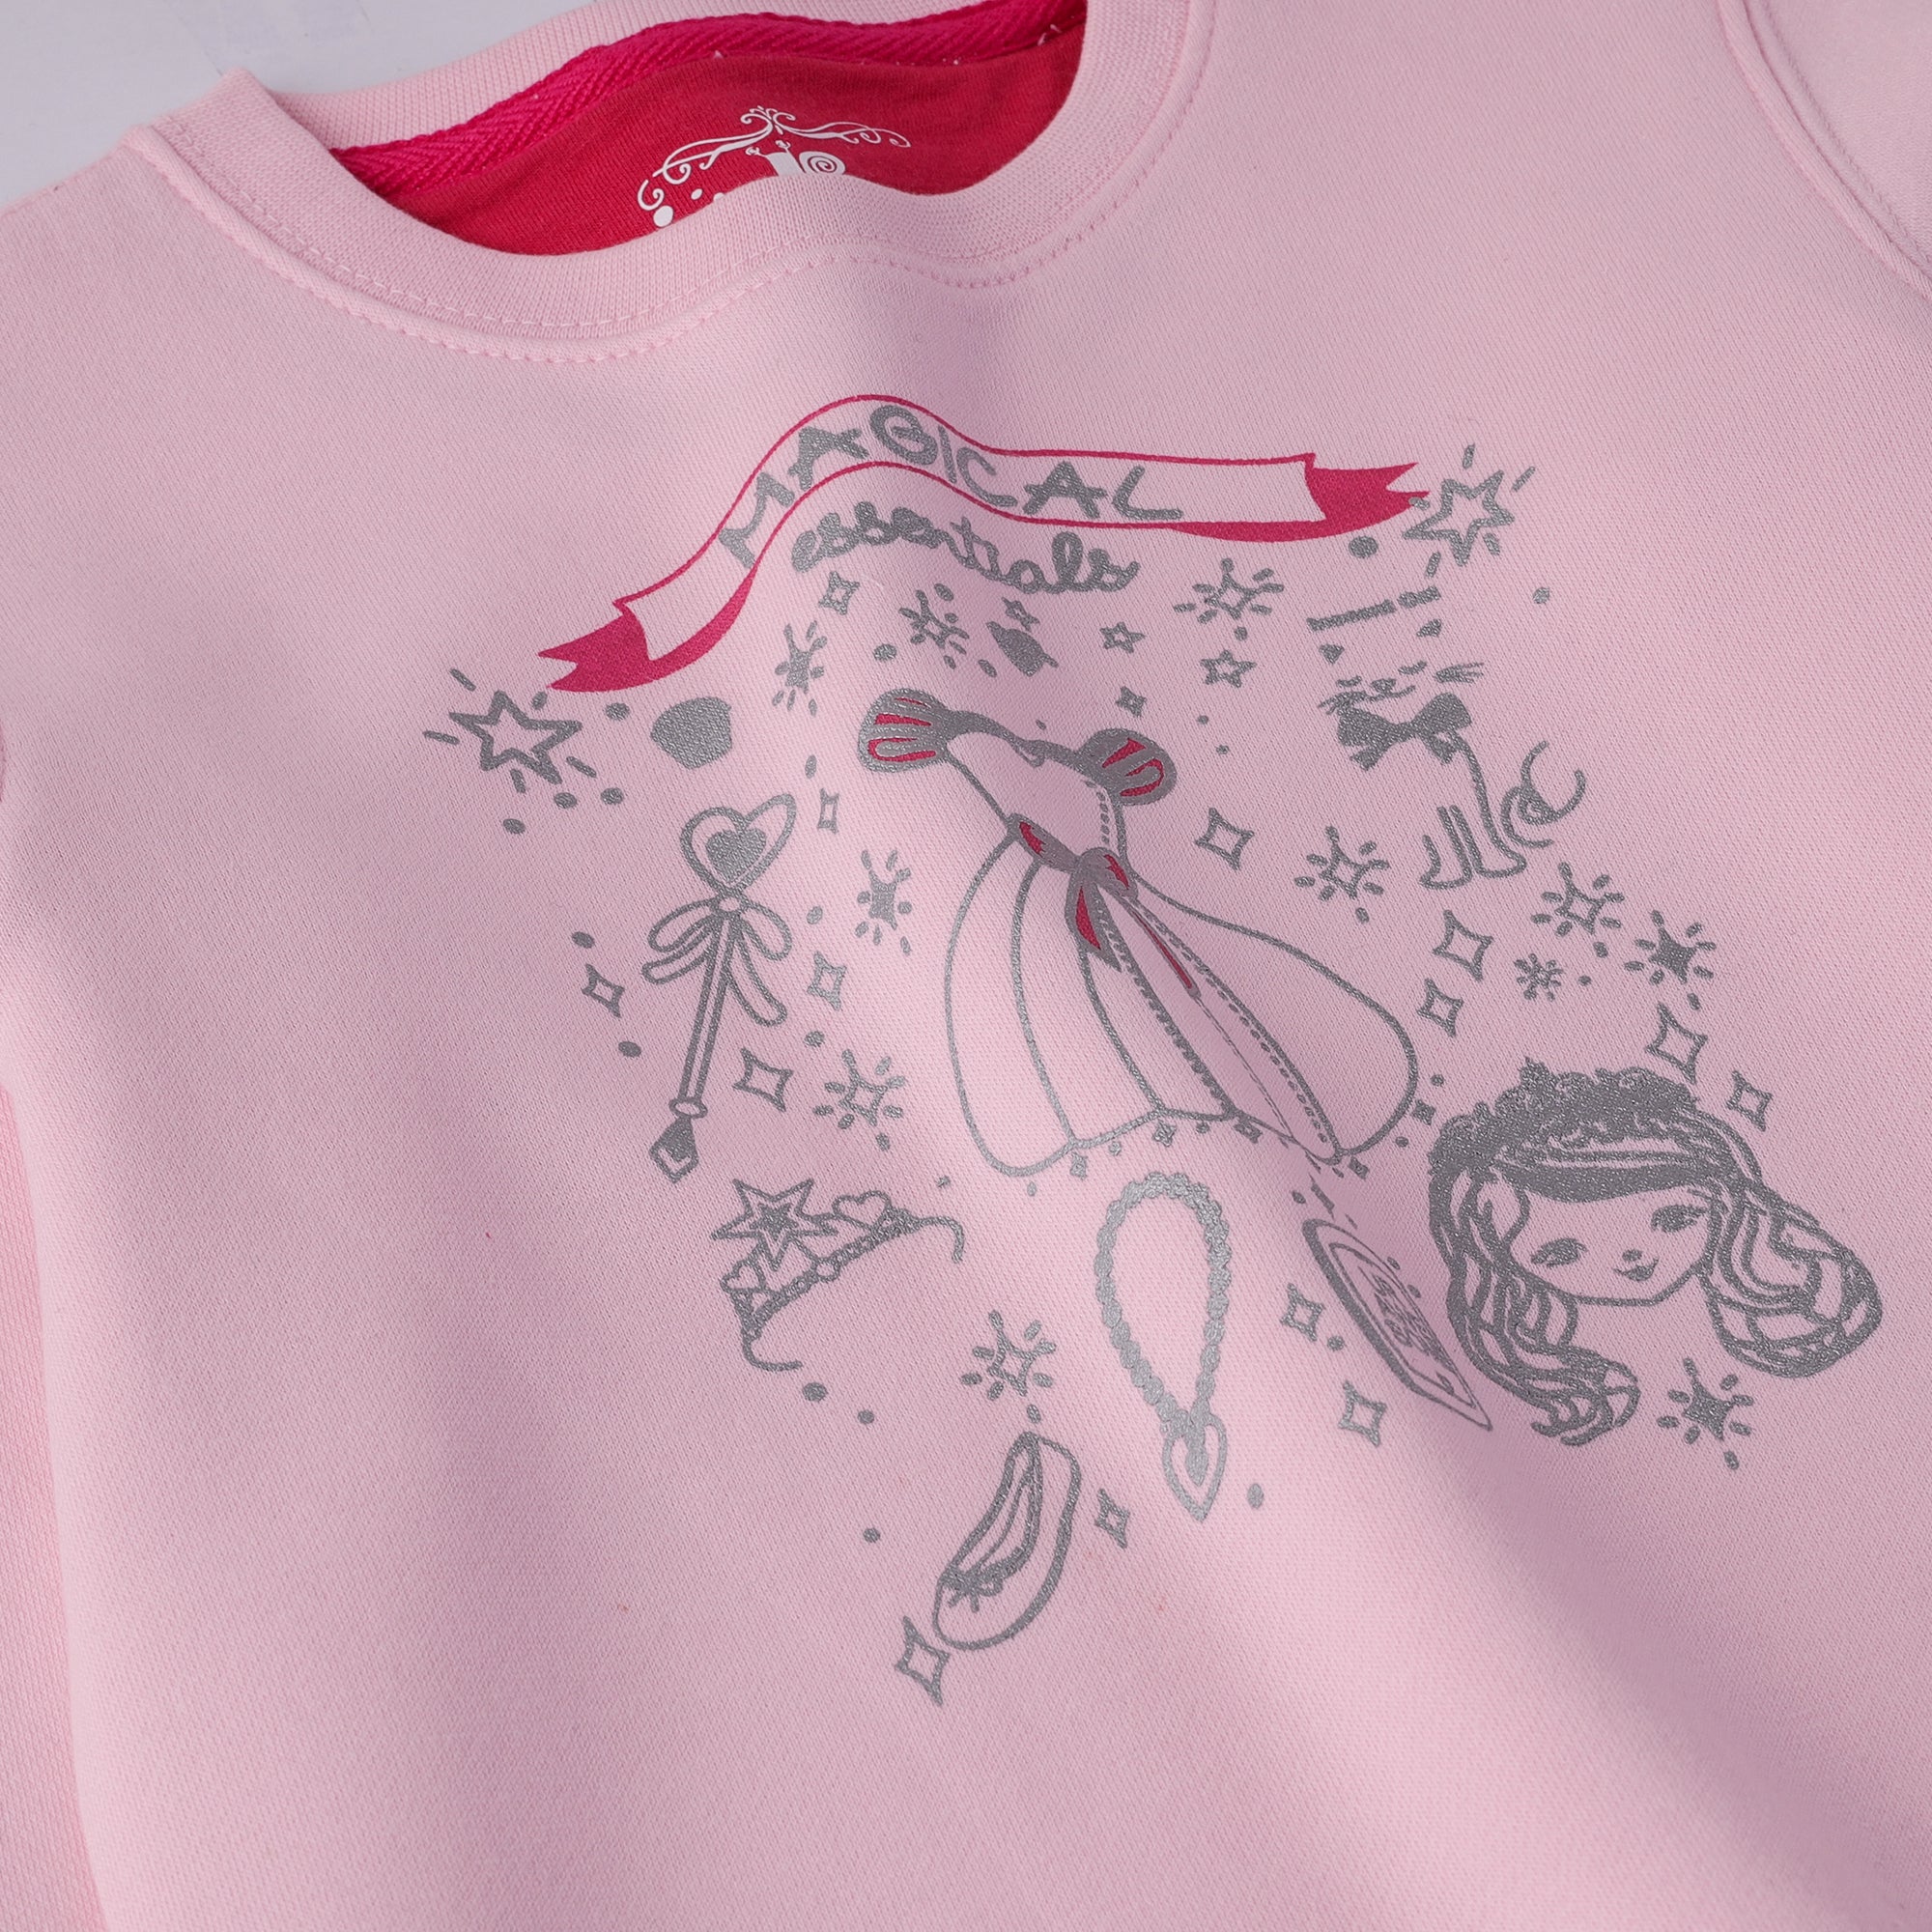 Pink Magic Girls Fleece Sweatshirt